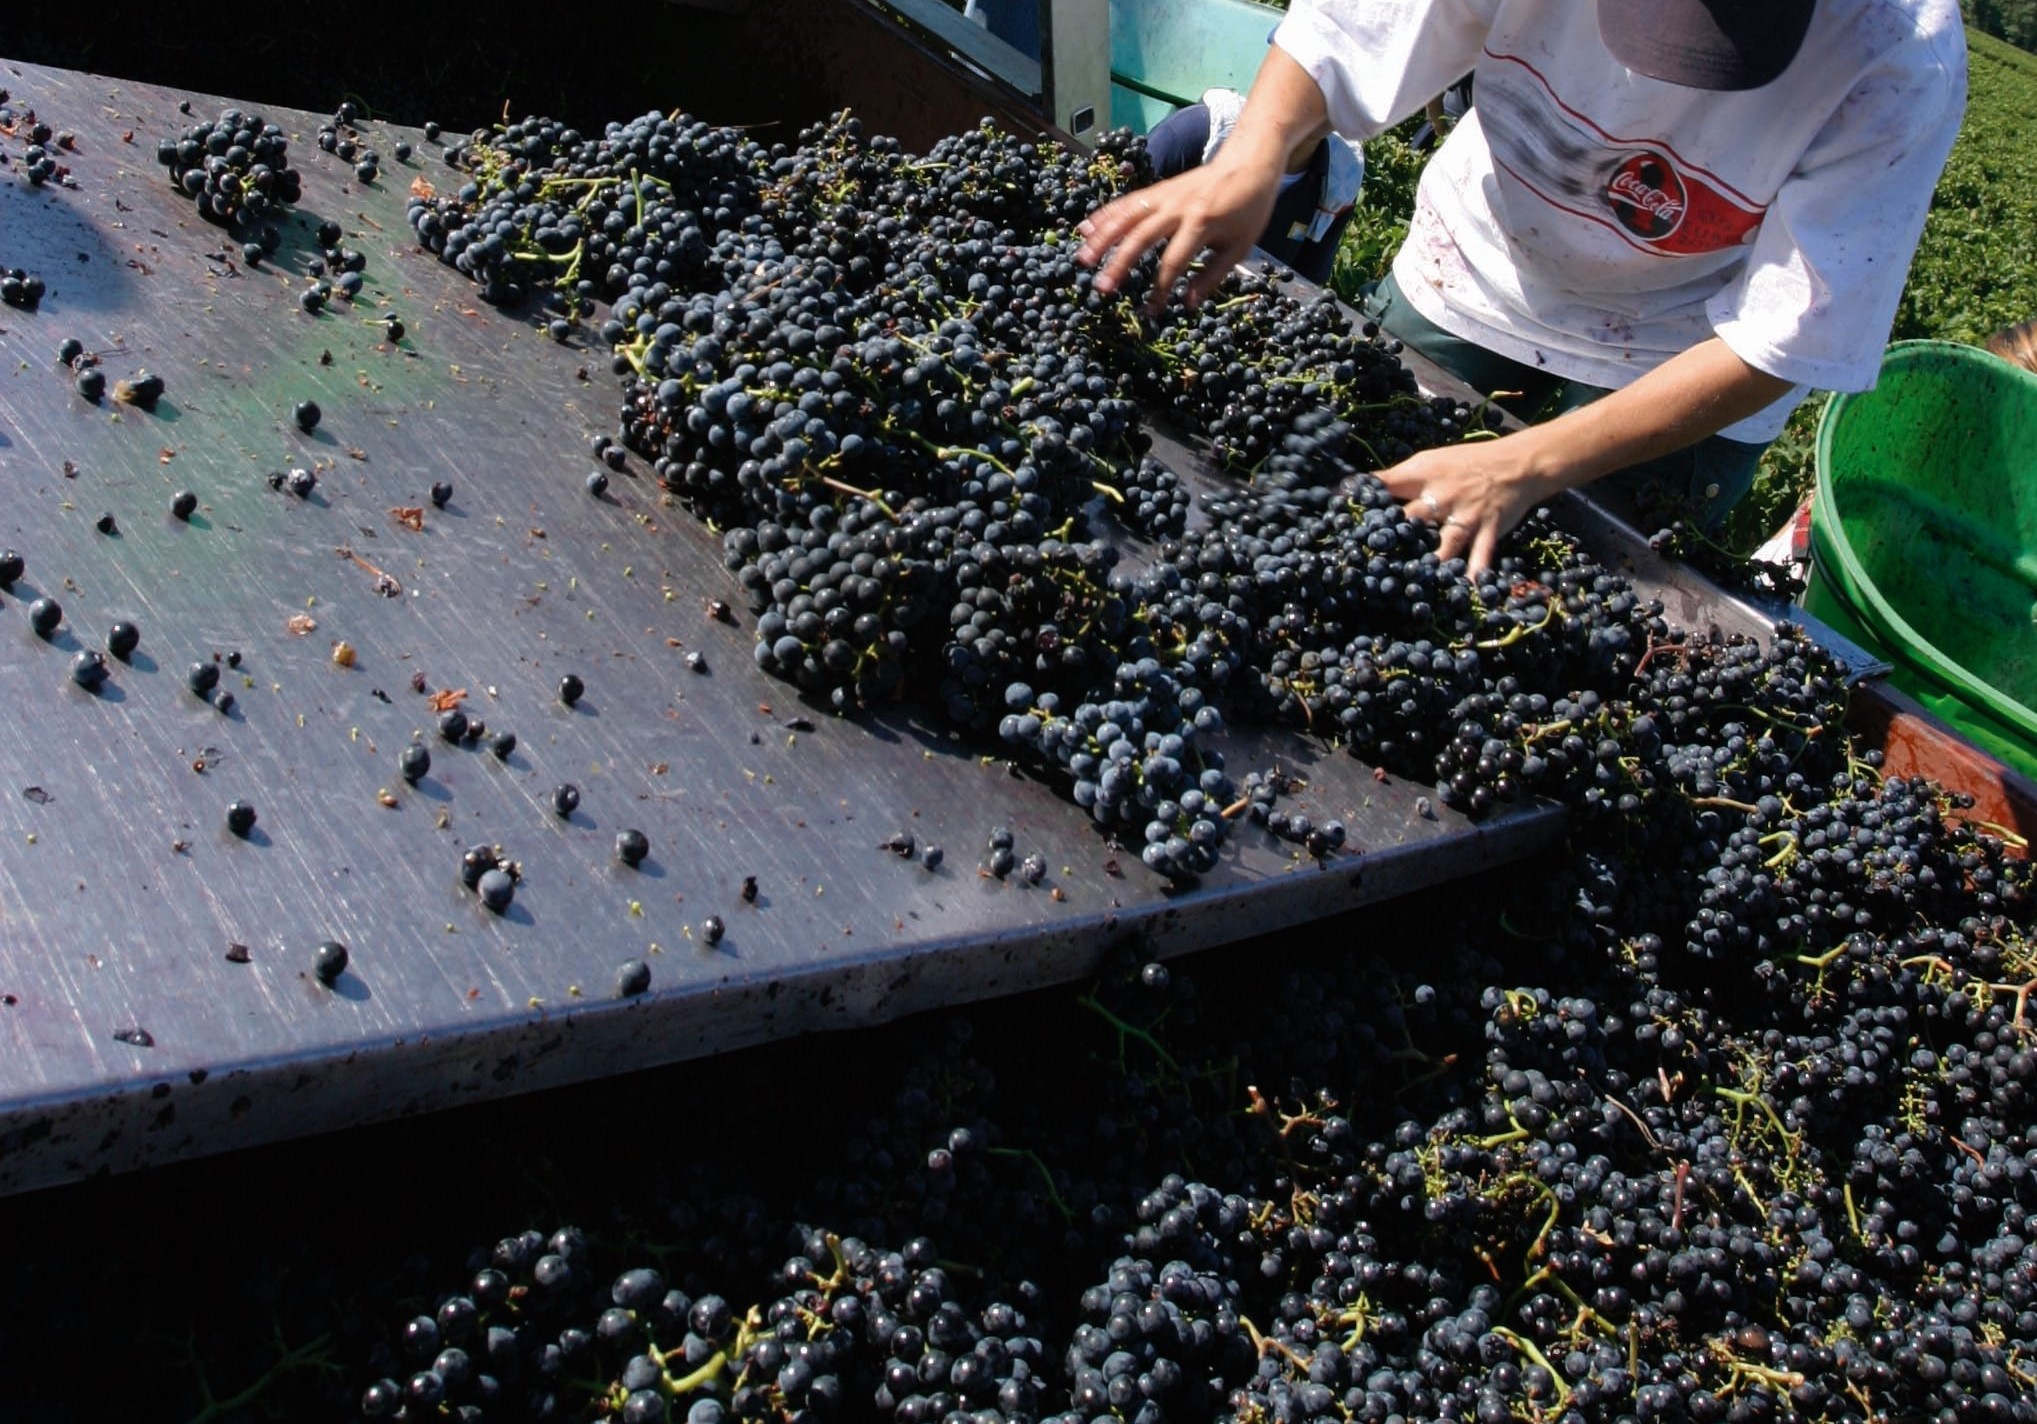 採收葡萄是農場大事，受到極端氣候影響，每一年的葡萄收穫狀況不同，需要專業釀酒師的判斷。